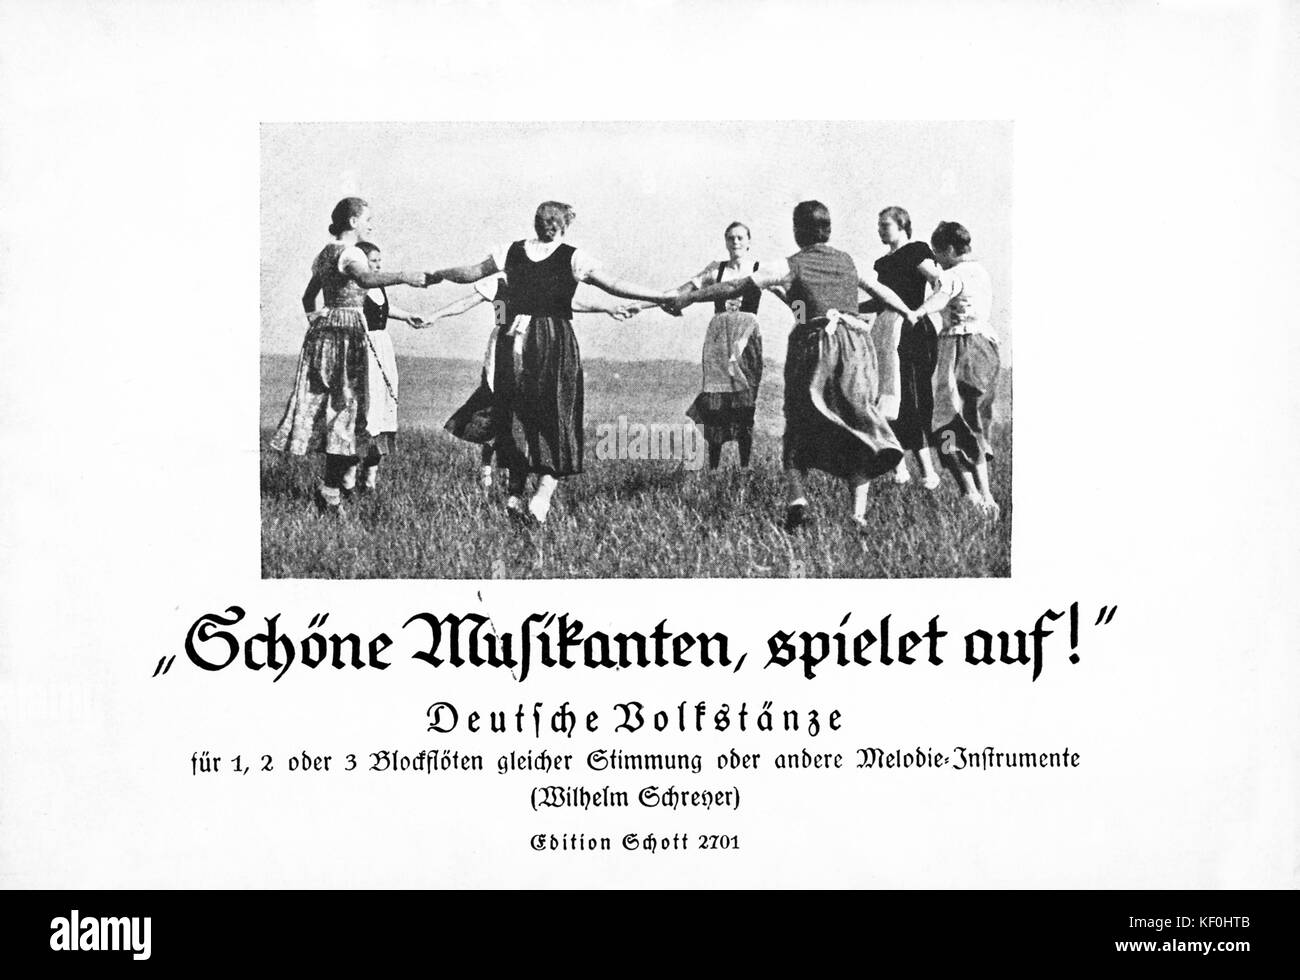 Wilhelm Schreyer 'Deutsche Bolfstanze'. Bildunterschrift: 'SMusikanten, Spielet auf!" (Spielen, schöne Musiker). Ergebnis decken. Von Schott, Leipzig, 1937 veröffentlicht. Stockfoto